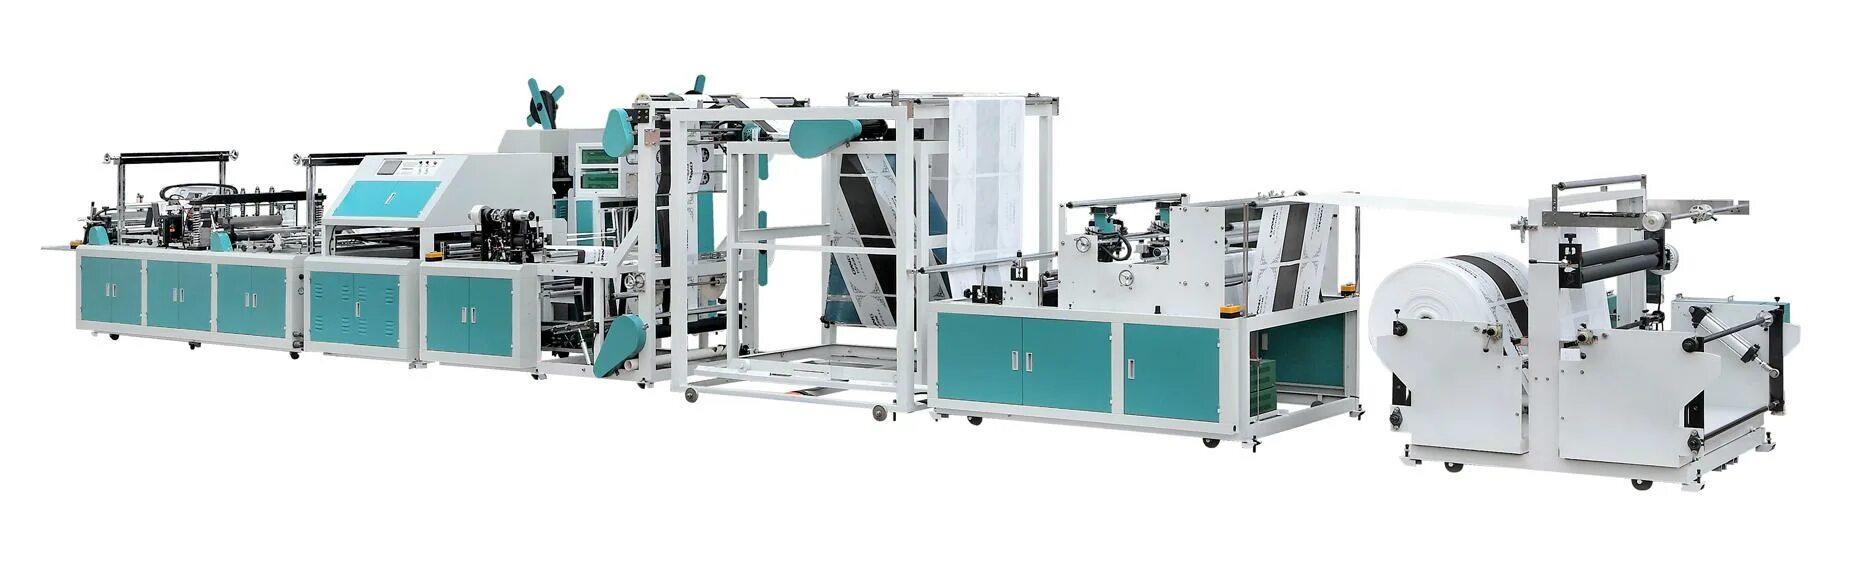 Нон спид. Sd600 автоматик Bag-making Machine. Bag making Machine GH-1100. Sq 4 Bag Machine. Flexo Printing Machines.